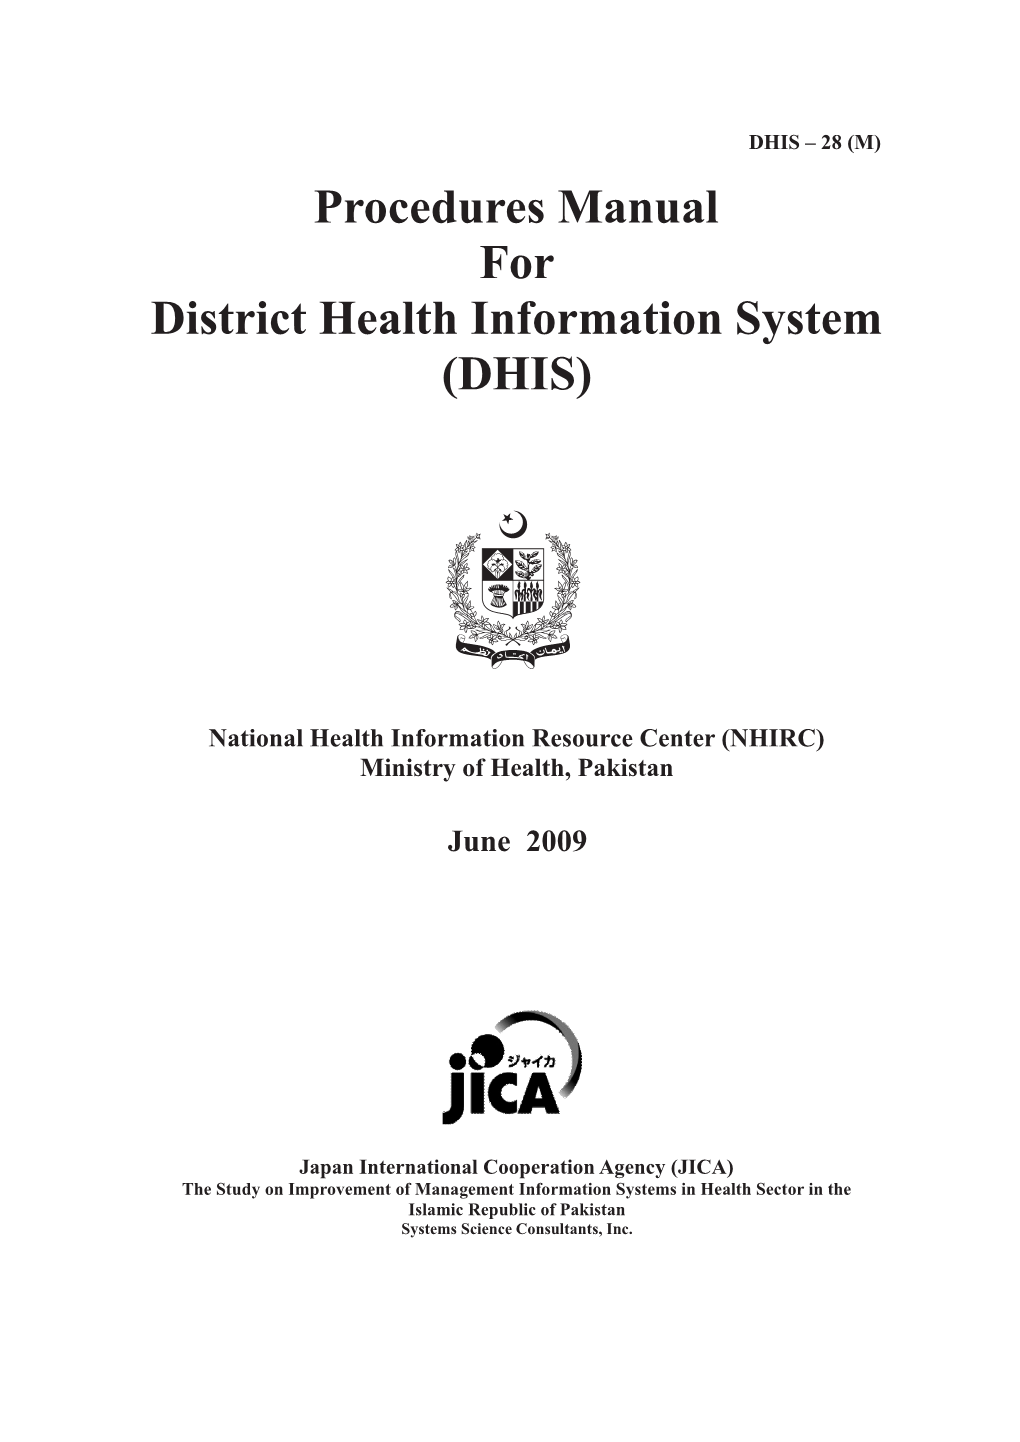 DHIS Procedures Manual 2009.Pdf